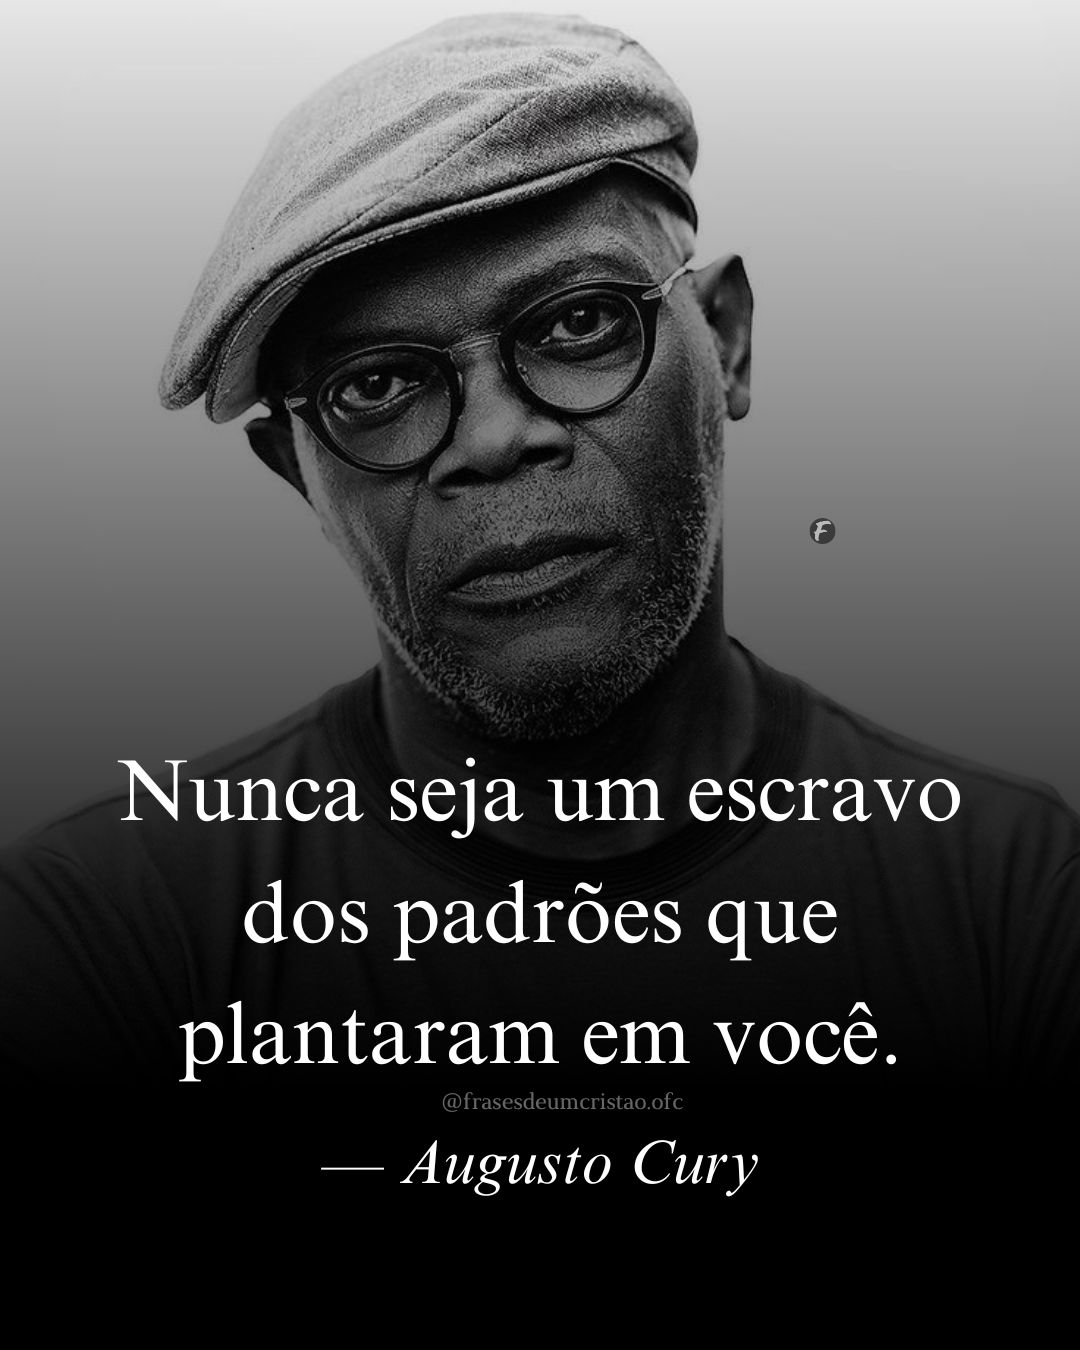 Nunca seja um escravo dos padrões que plantaram em você. — Augusto Cury